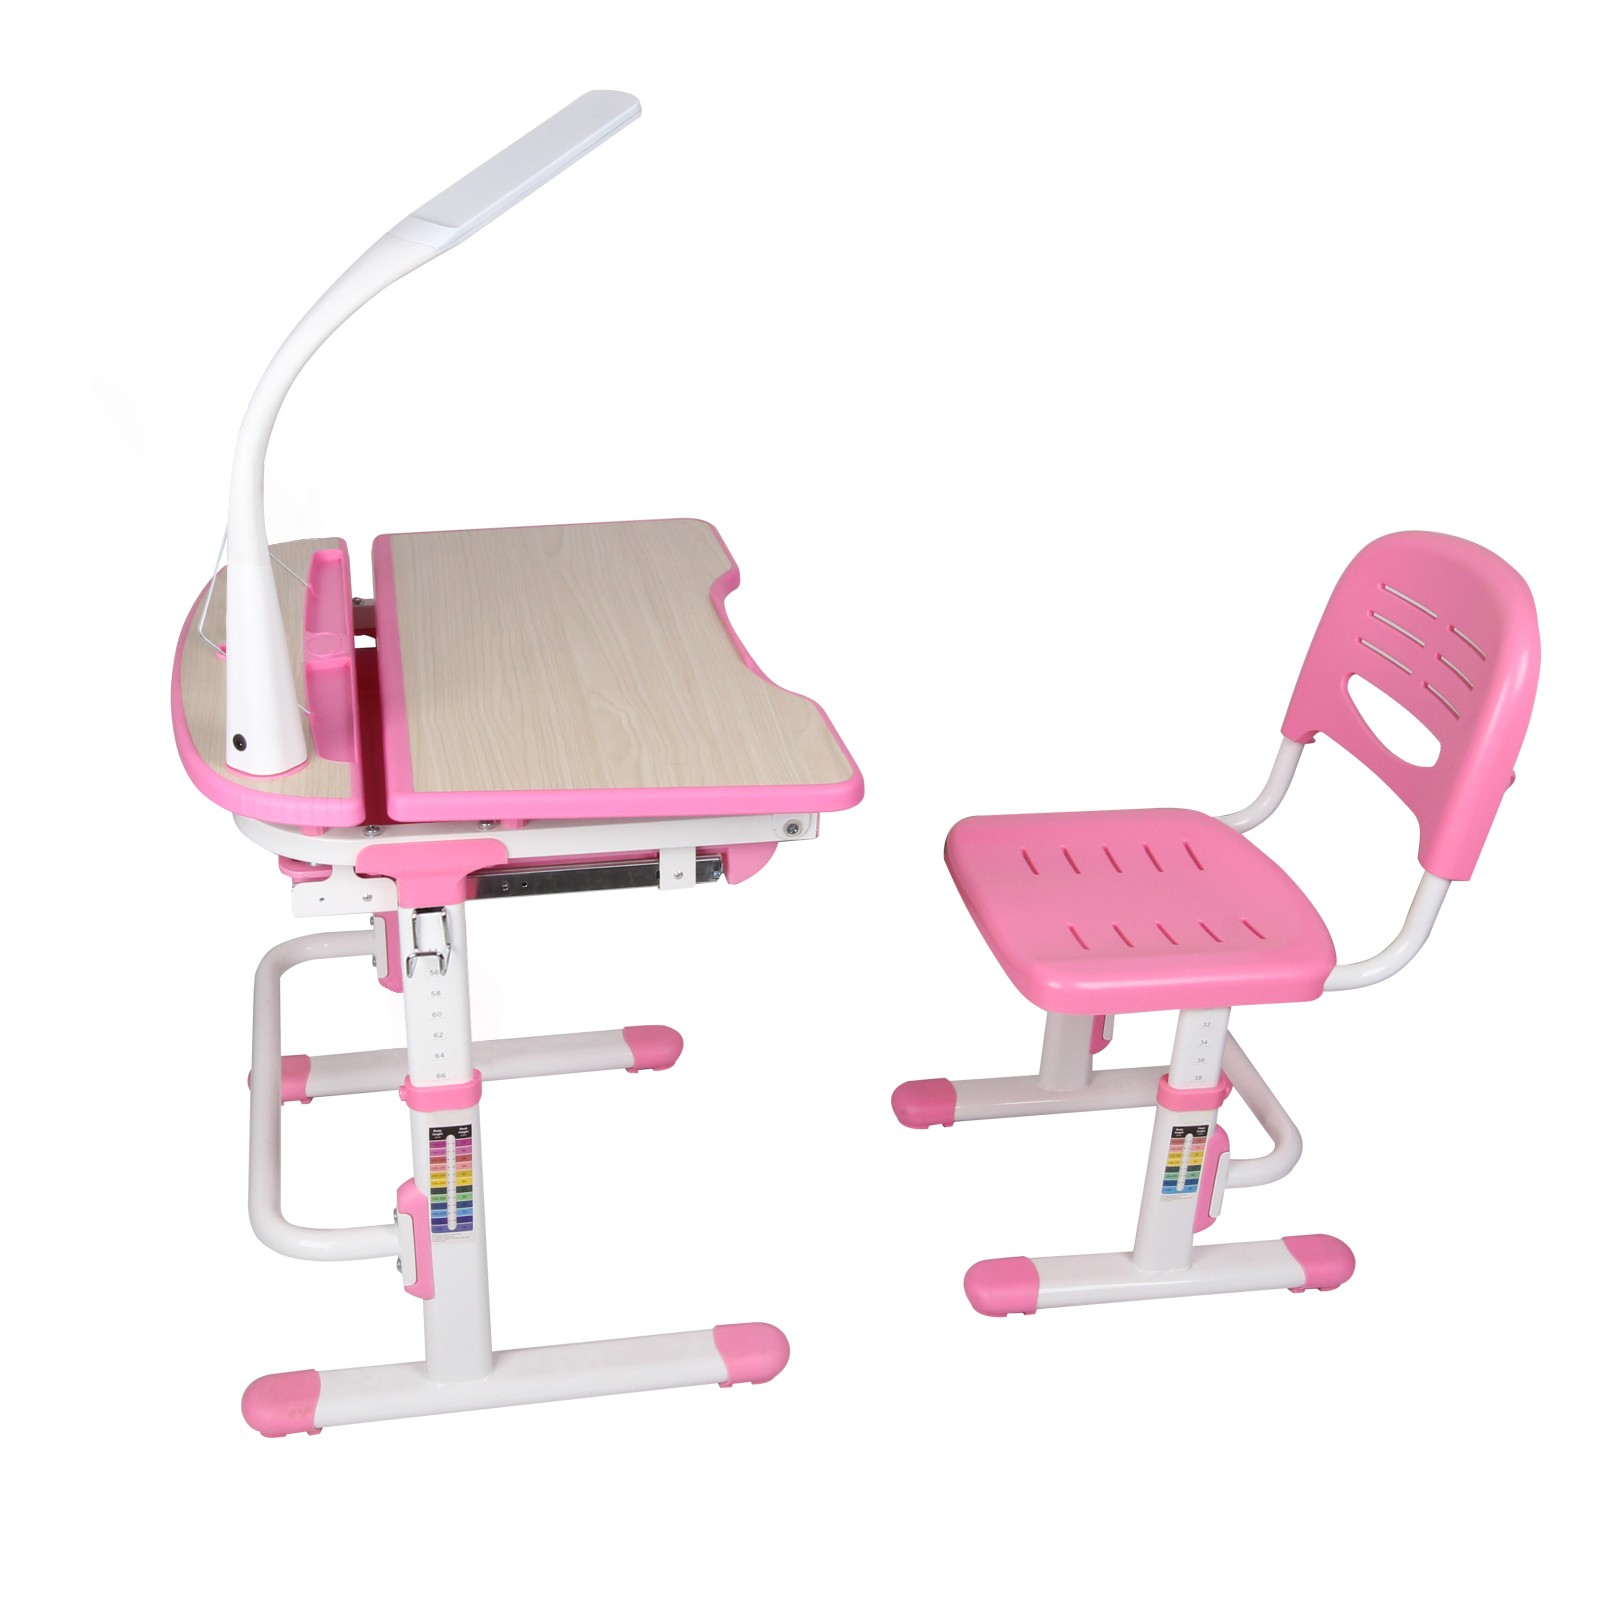 Funkcjonalne biurko - rośnie z wiekiem dziecka 3-14 lat